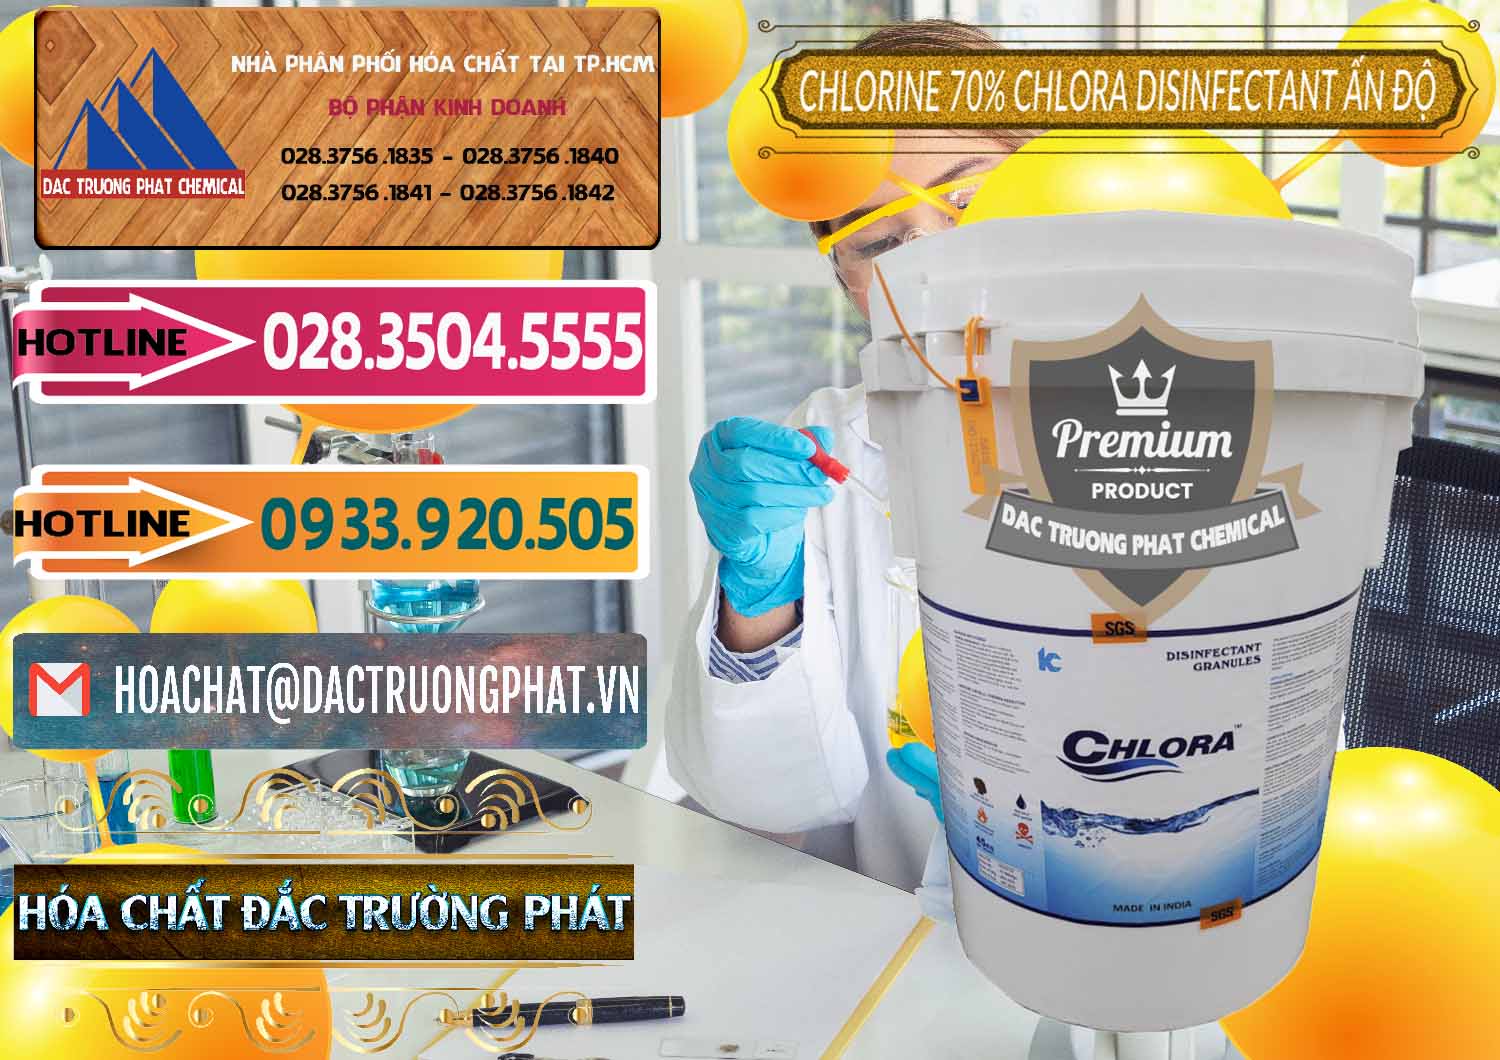 Cty bán _ cung ứng Chlorine – Clorin 70% Chlora Disinfectant Ấn Độ India - 0213 - Nhà phân phối và cung ứng hóa chất tại TP.HCM - dactruongphat.vn